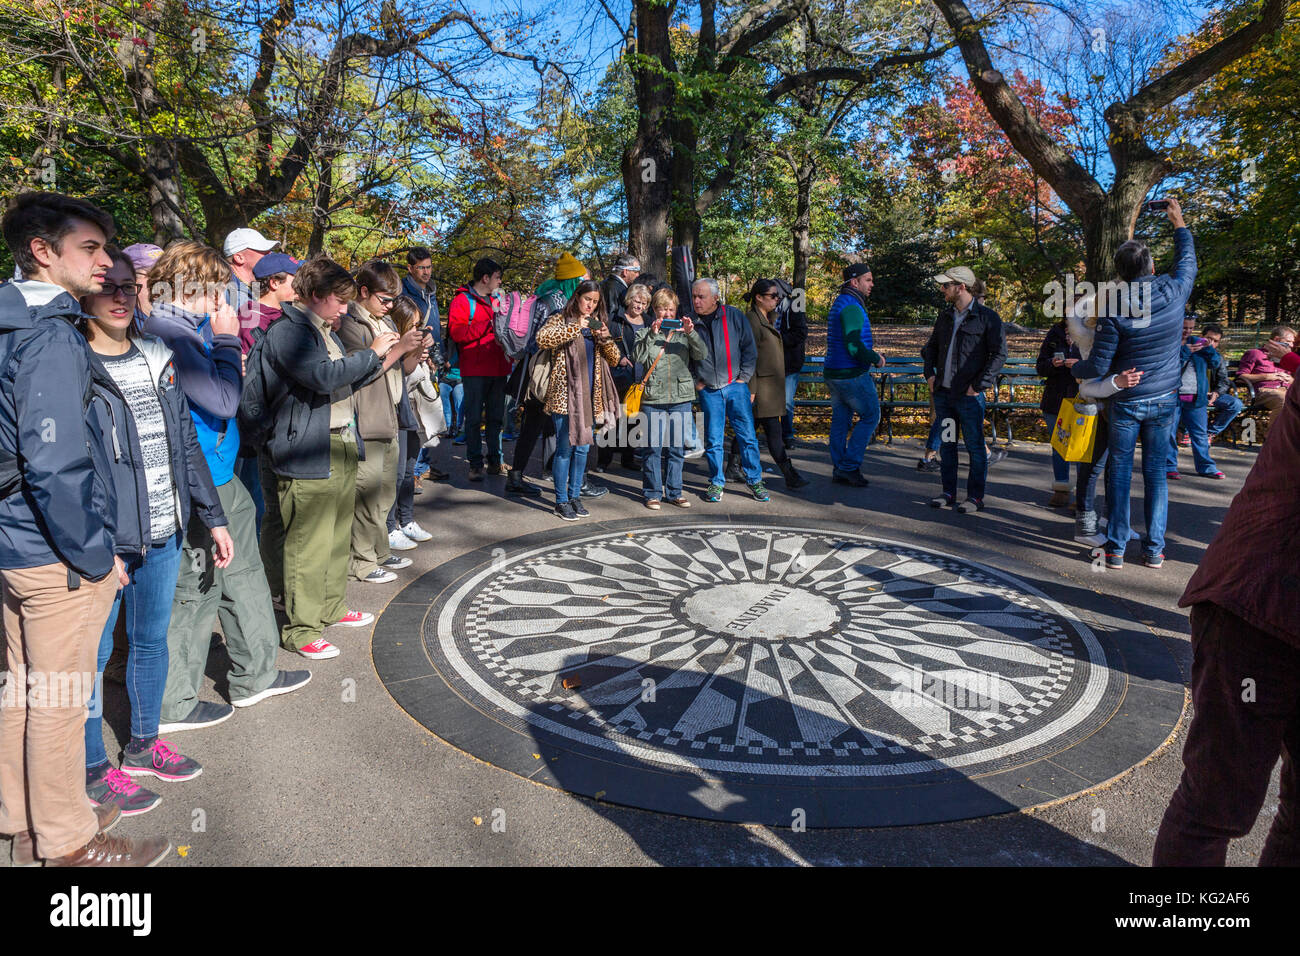 I turisti che circonda il mosaico immaginare a Strawberry Fields memorial a John Lennon, al Central Park di New York City, NY, STATI UNITI D'AMERICA Foto Stock